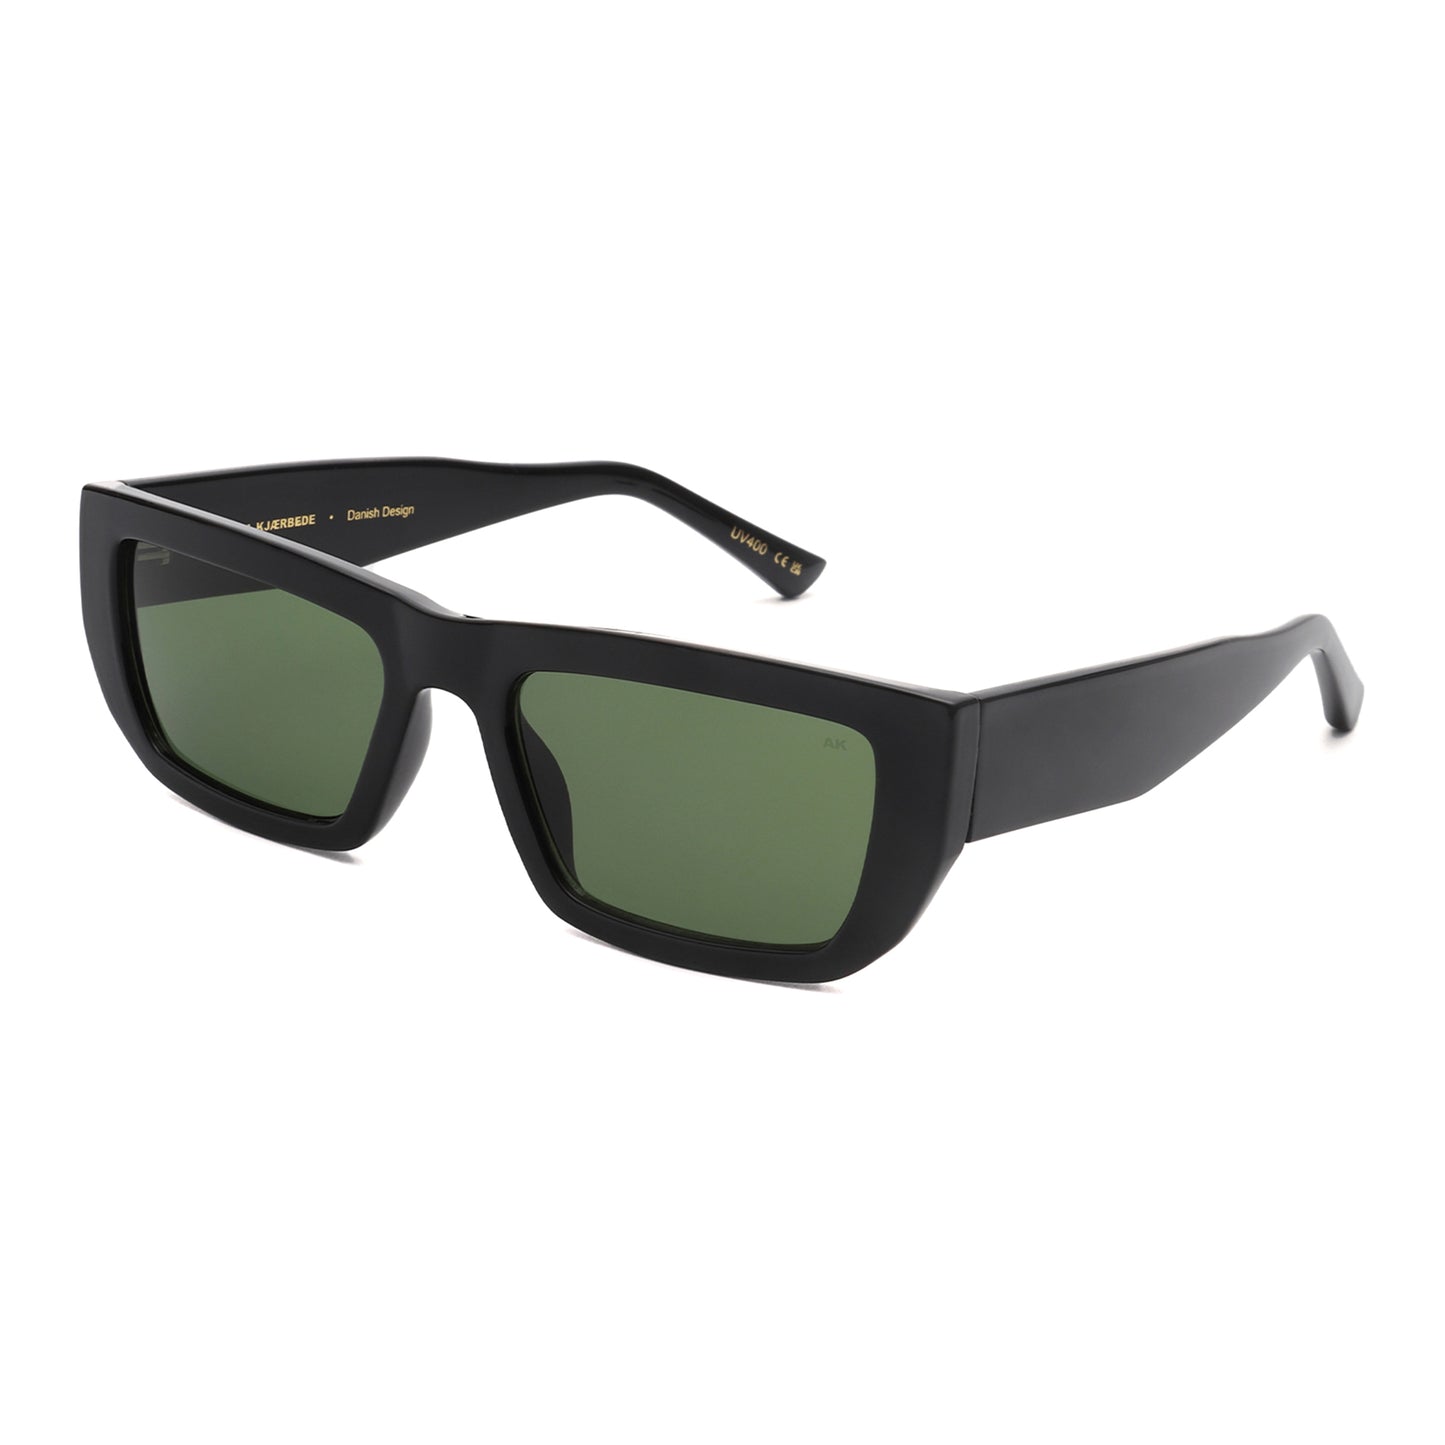 A.Kjaerbede Fame Sunglasses in Black color